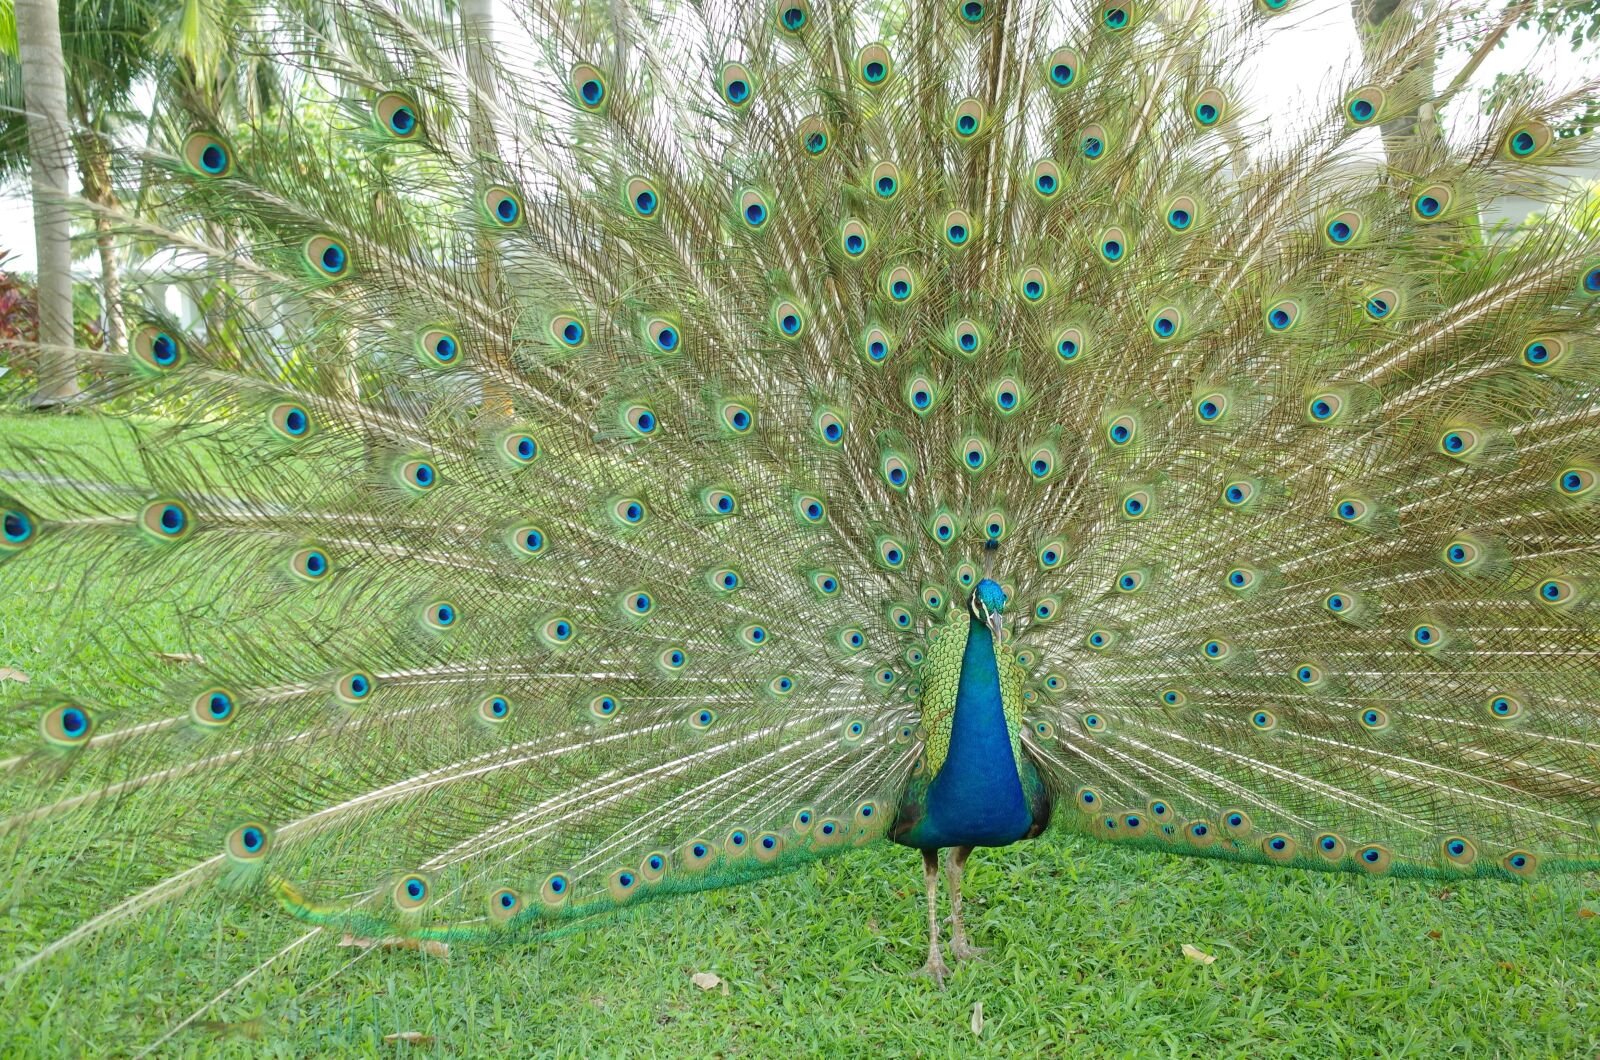 Ricoh GR II + GR Lens sample photo. Peacock, feathers, bird photography